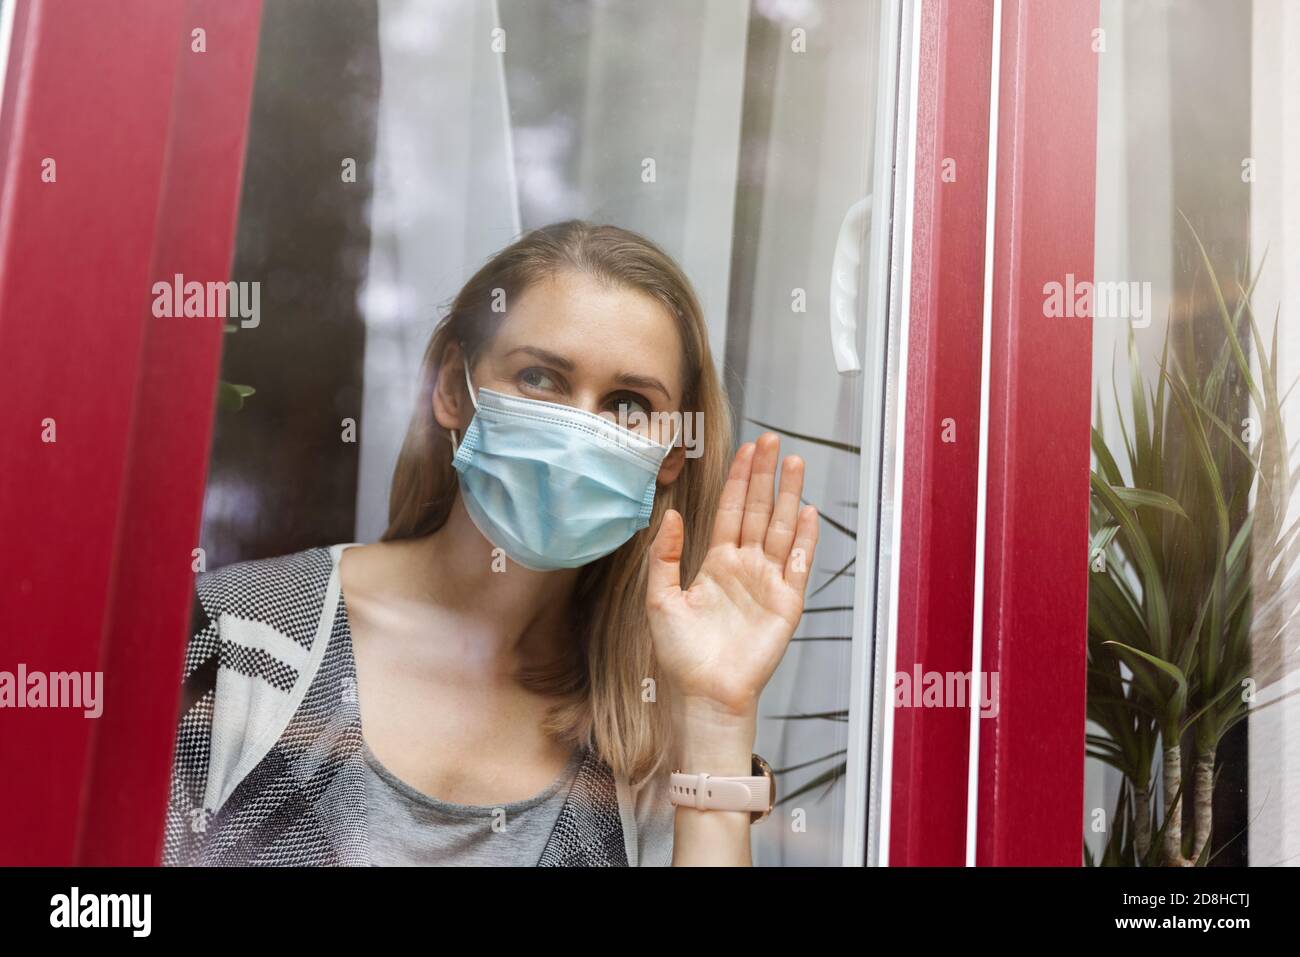 aislamiento y cuarentena domiciliaria - mujer con mascarilla médica mirando a través de la ventana Foto de stock